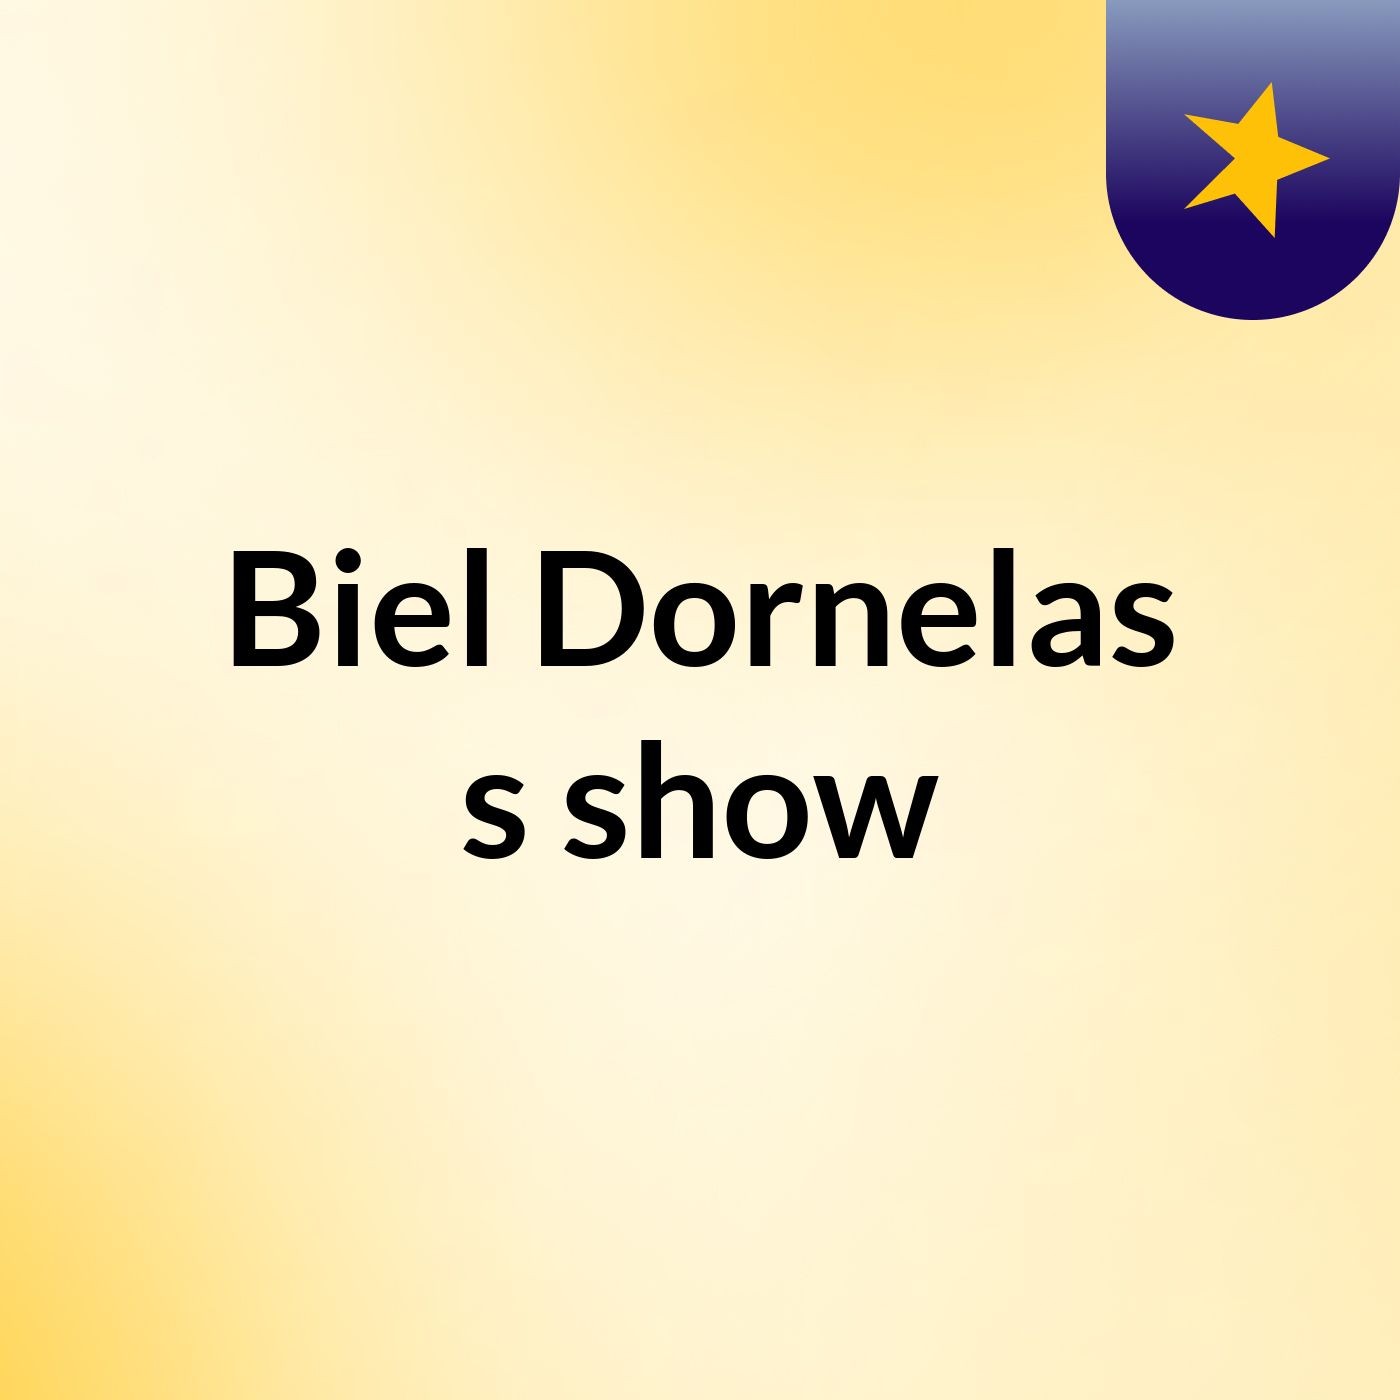 Biel Dornelas's show